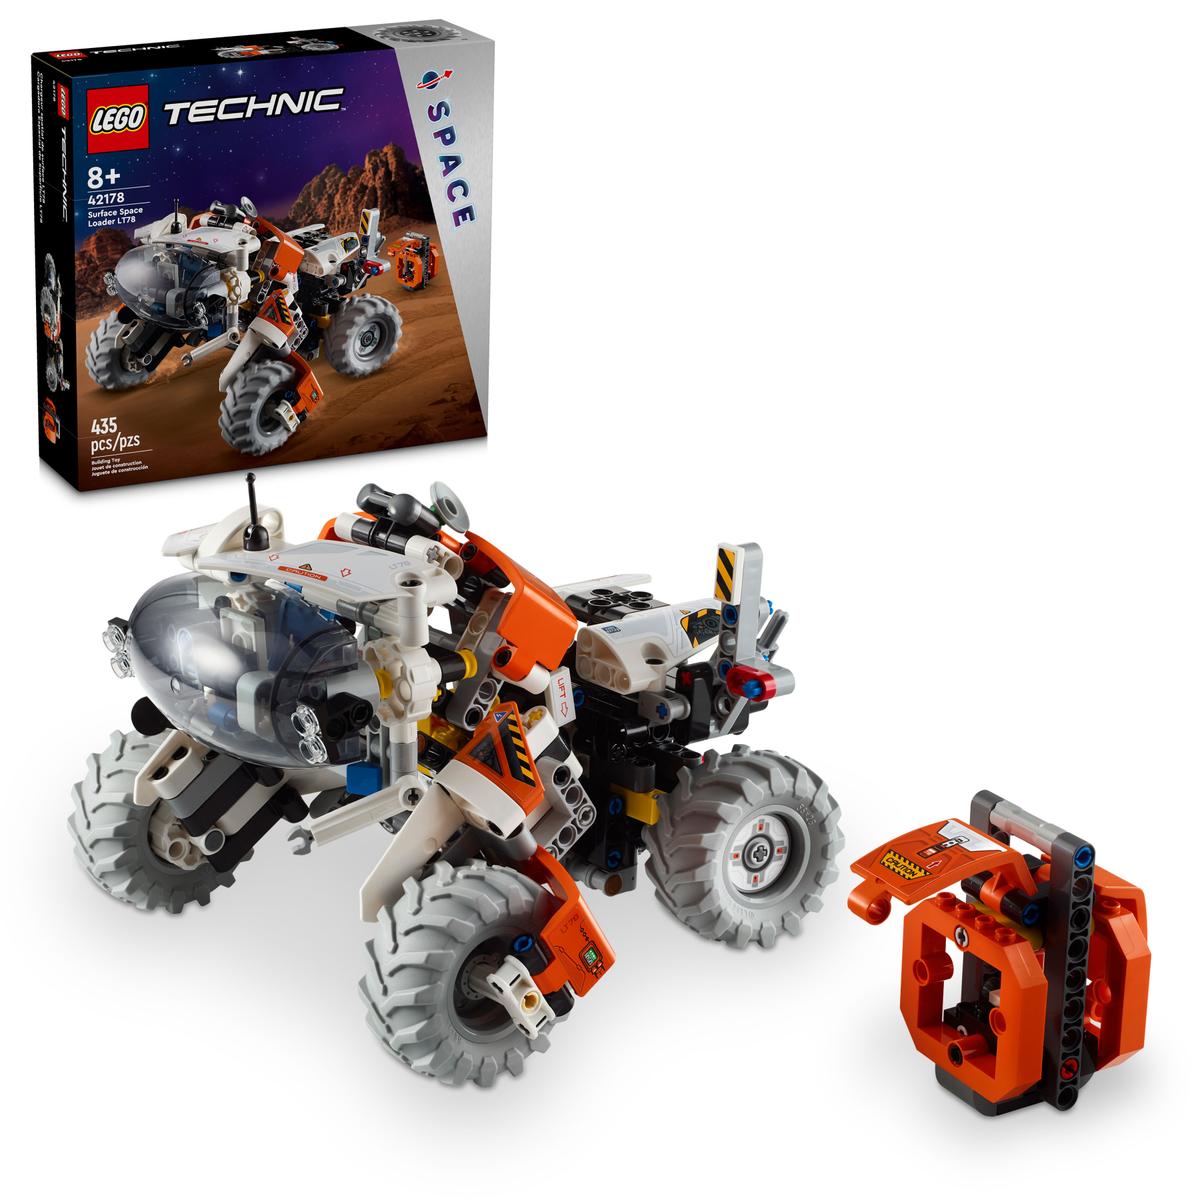 Lego 42178 - Technic: Weltraumradlader